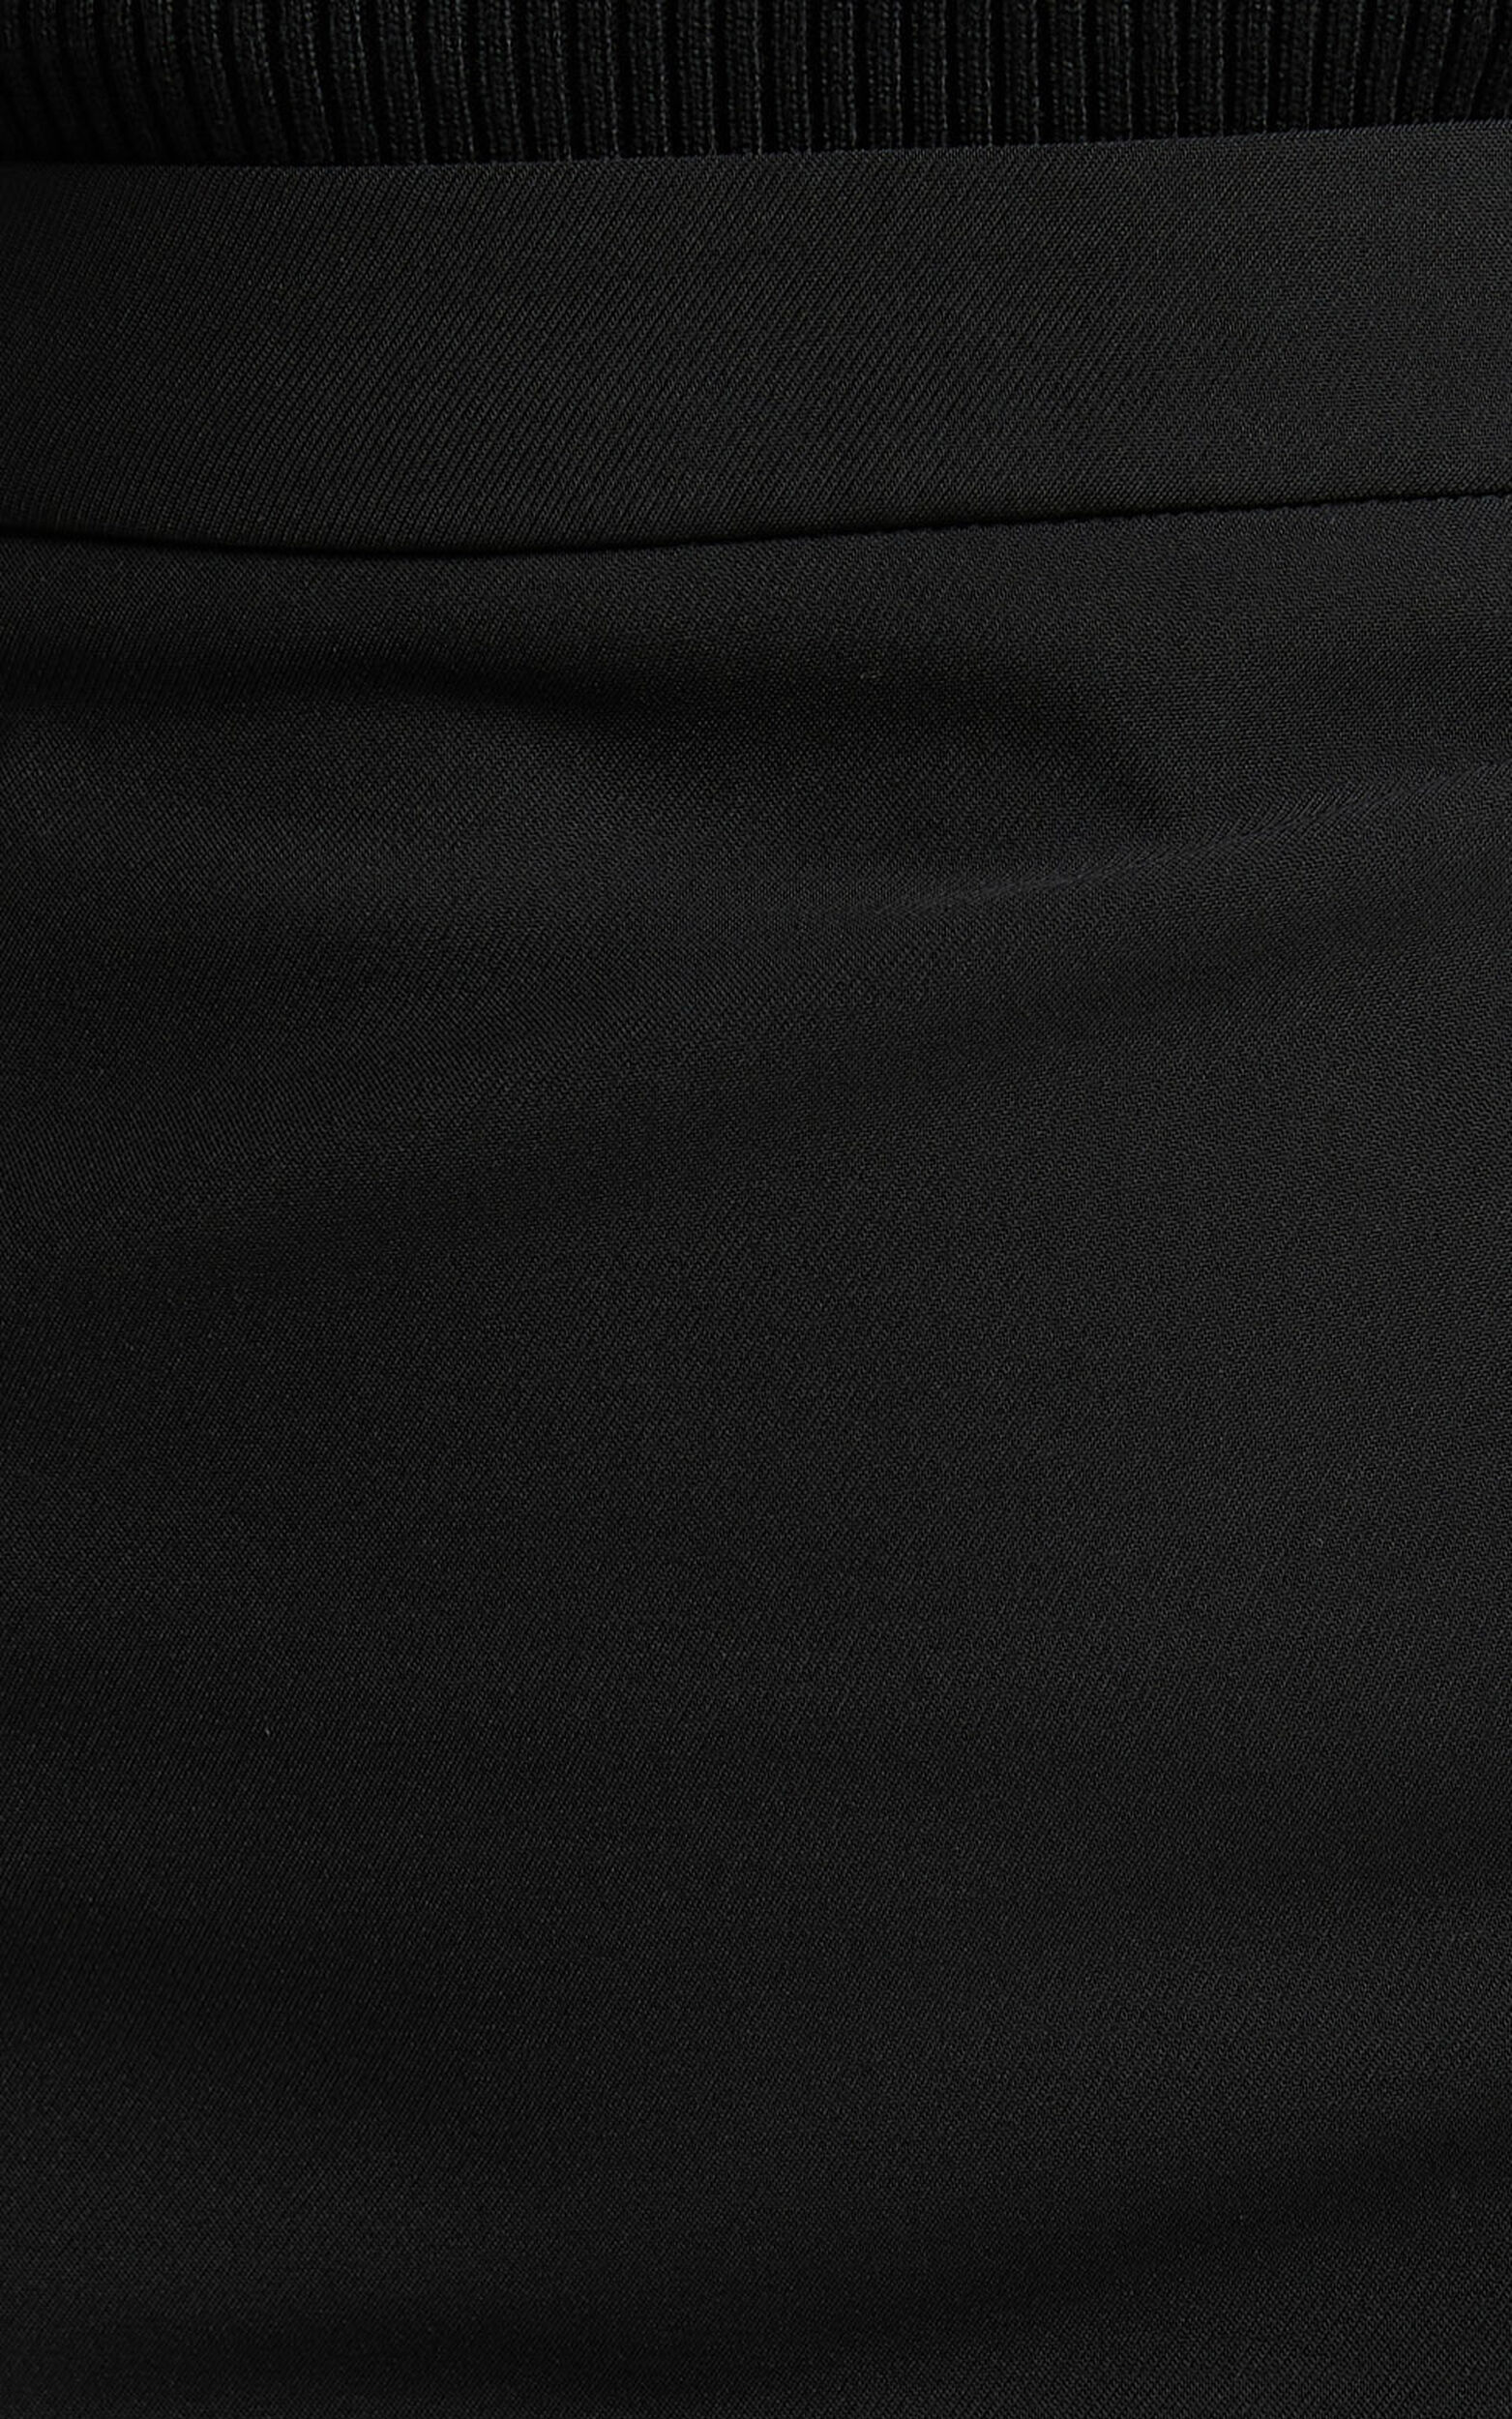 Evelenna Mini Skirt - High Waisted Split Skirt in Black